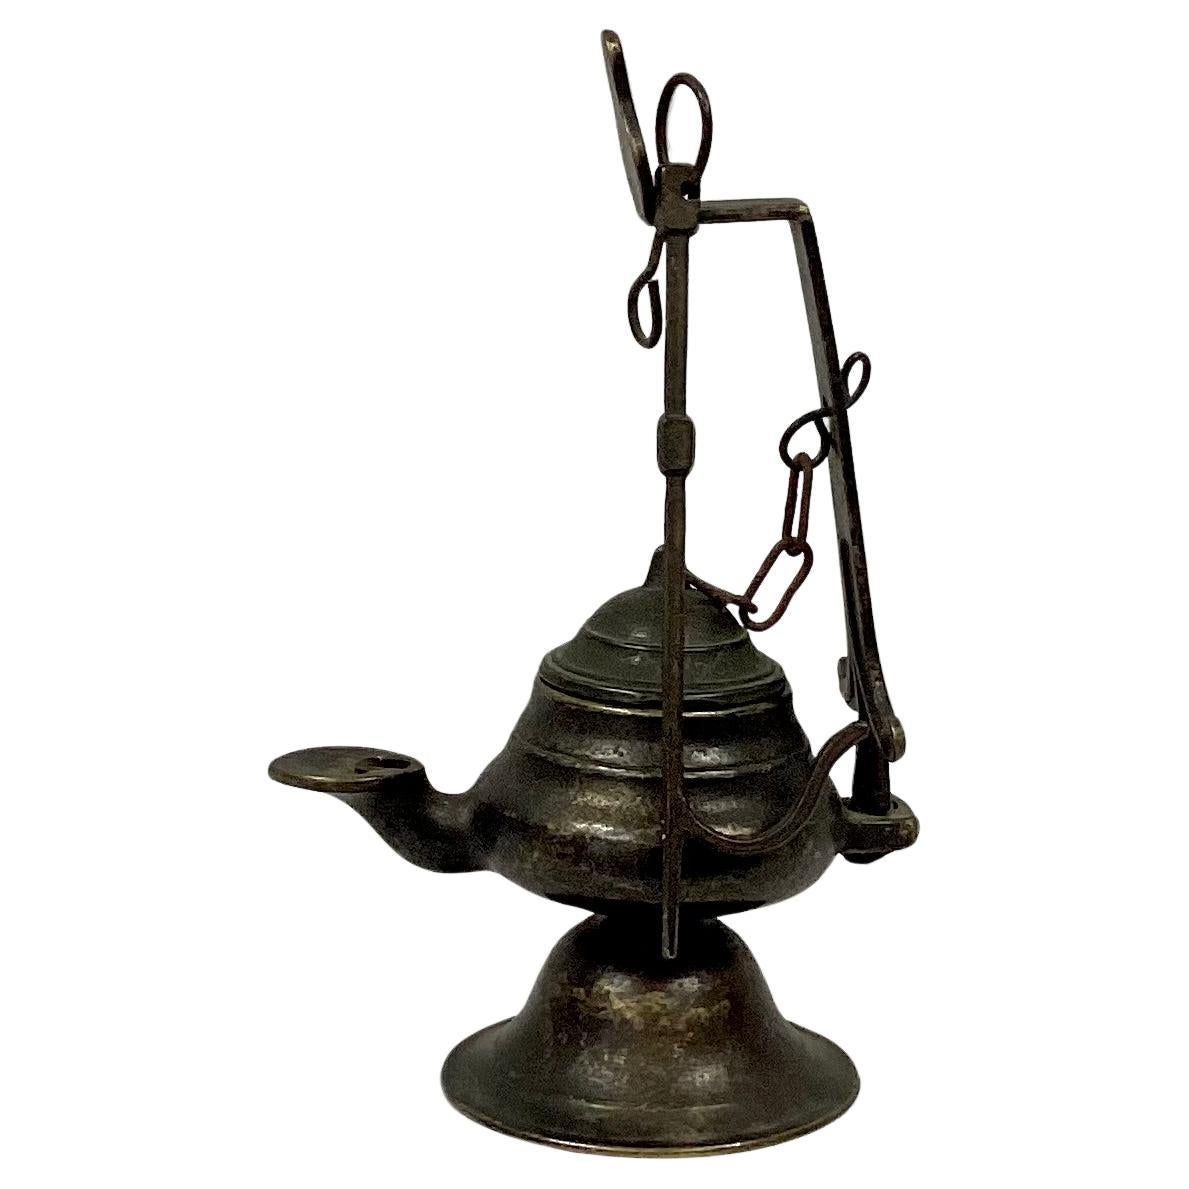 Italienische hängende Öllampe aus Bronze des 18. Jahrhunderts mit abnehmbarem Deckel. Massive Bronze. Kann aufgehängt oder als eigenständiges Dekorationselement verwendet werden. Ein großartiges Stück, das zu jeder Einrichtung passt.  Die